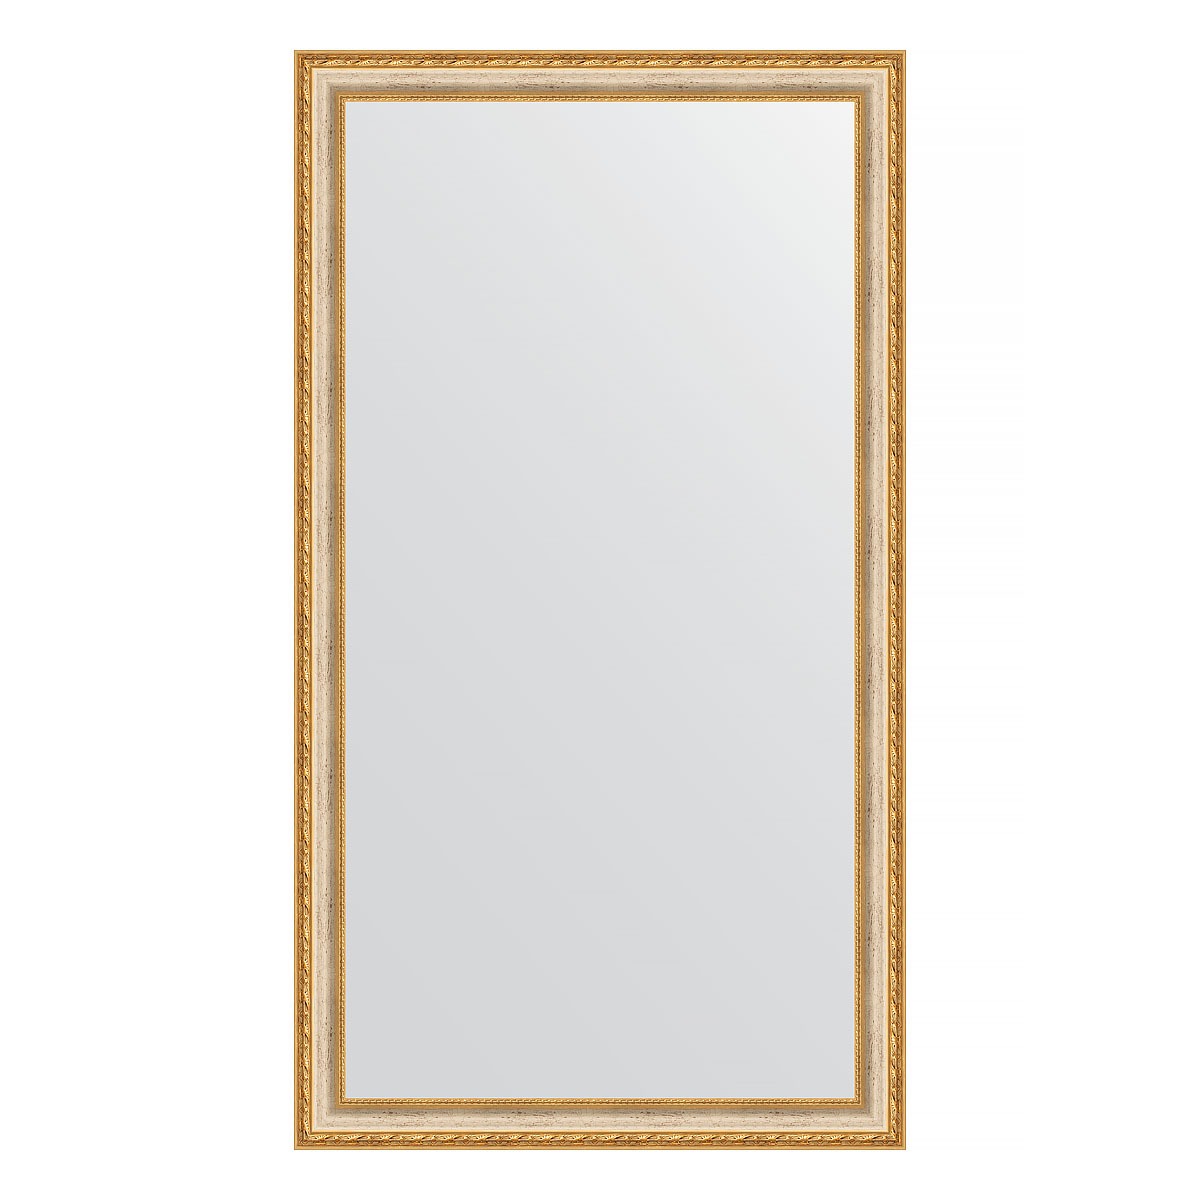 Зеркало в багетной раме Evoform версаль кракелюр 64 мм 75х135 см